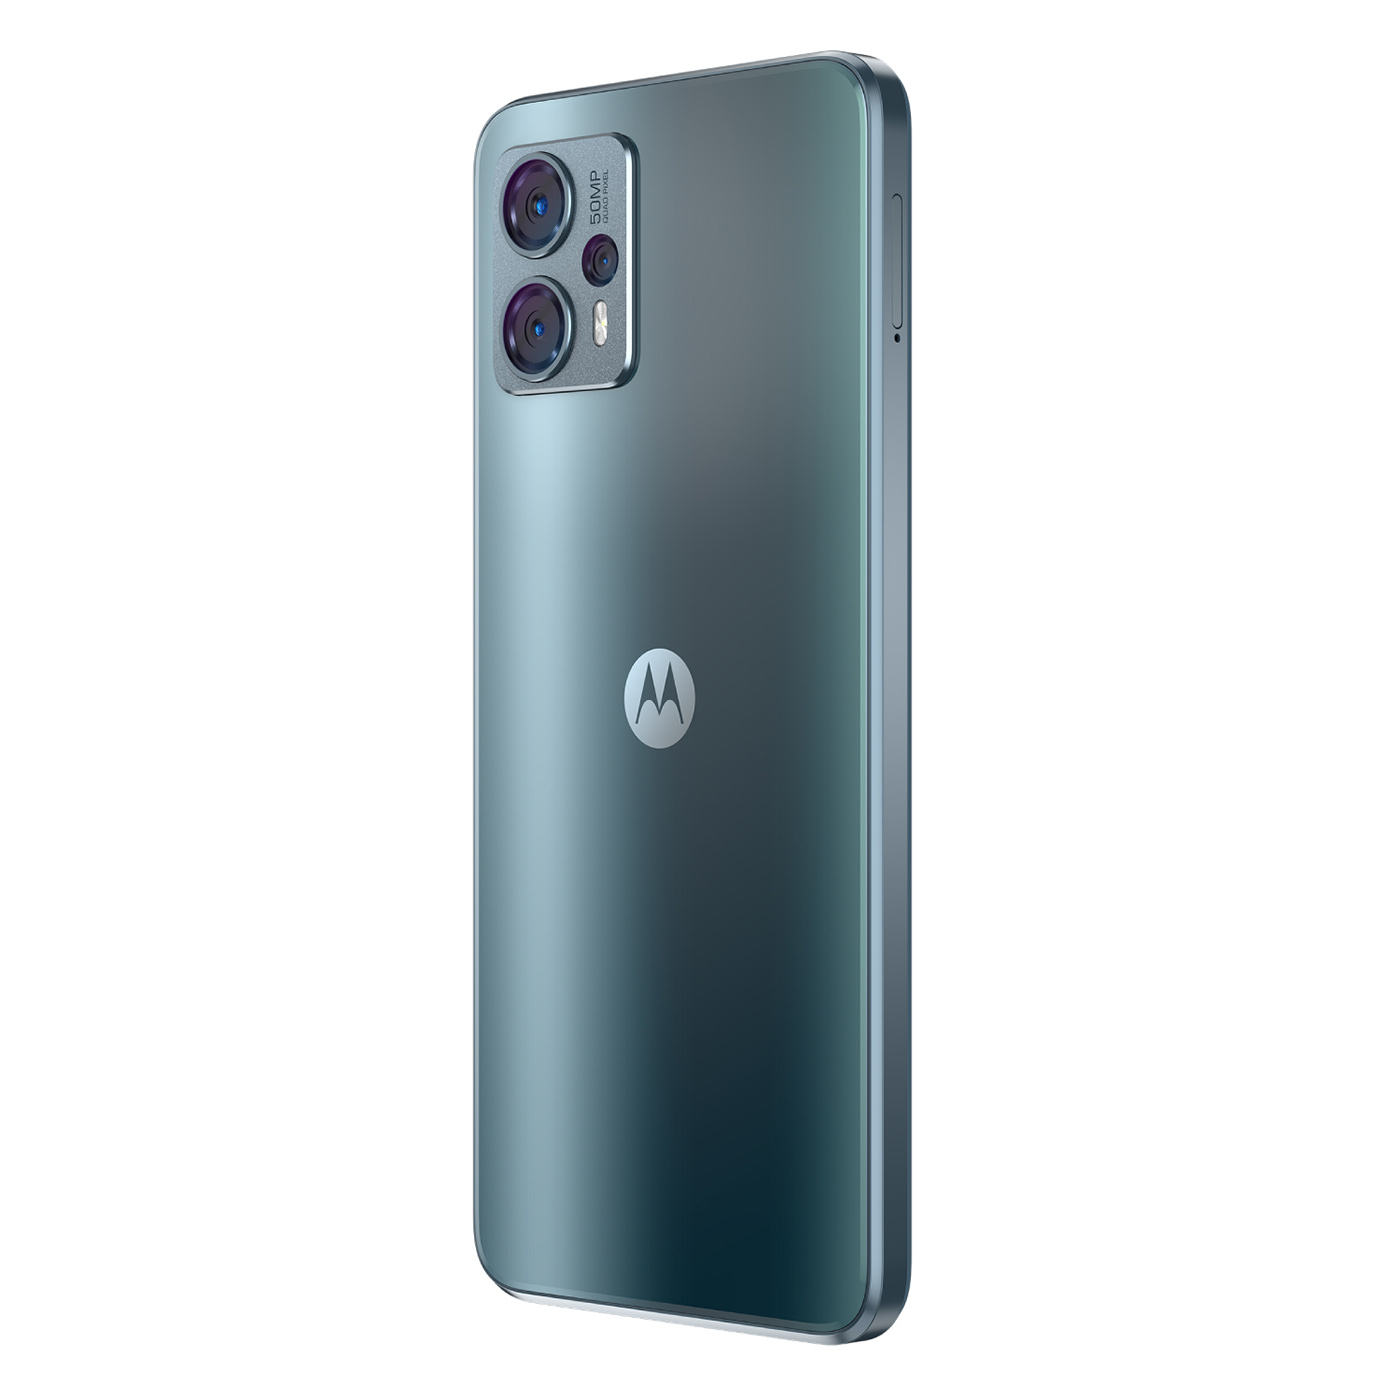 Salen a la luz imágenes del Motorola Moto G23